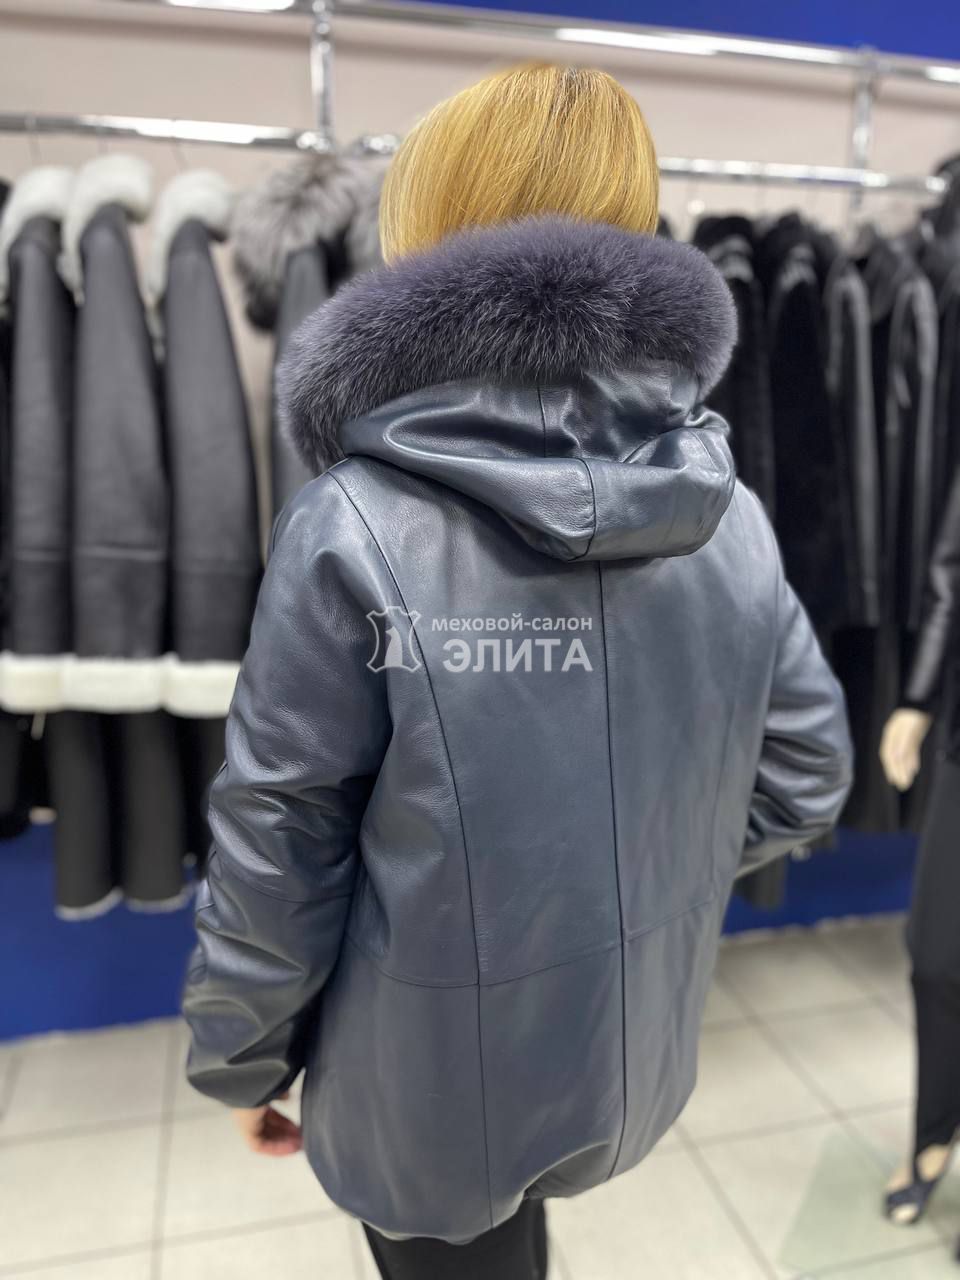 Куртка из кожи м.149 р-р 42-52, цена 34500 рублей в интернет-магазине кожи и меха ЭЛИТА. Вид 2